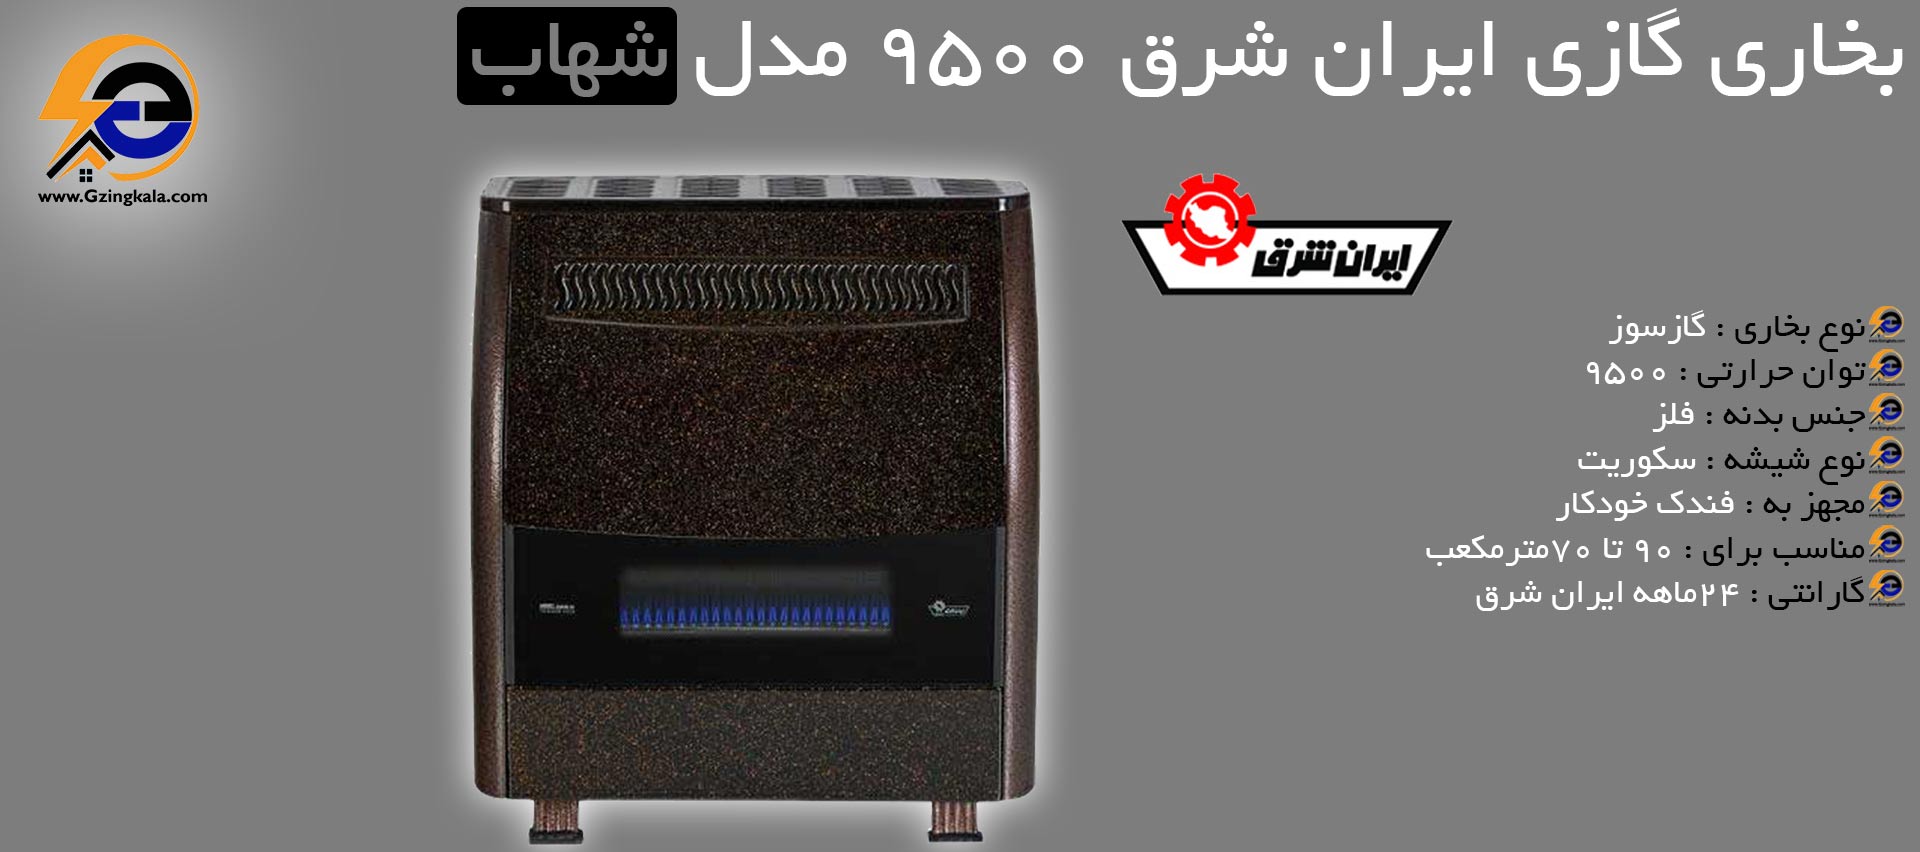 بخاری گازی ایران شرق ۹۵۰۰ مدل شهاب